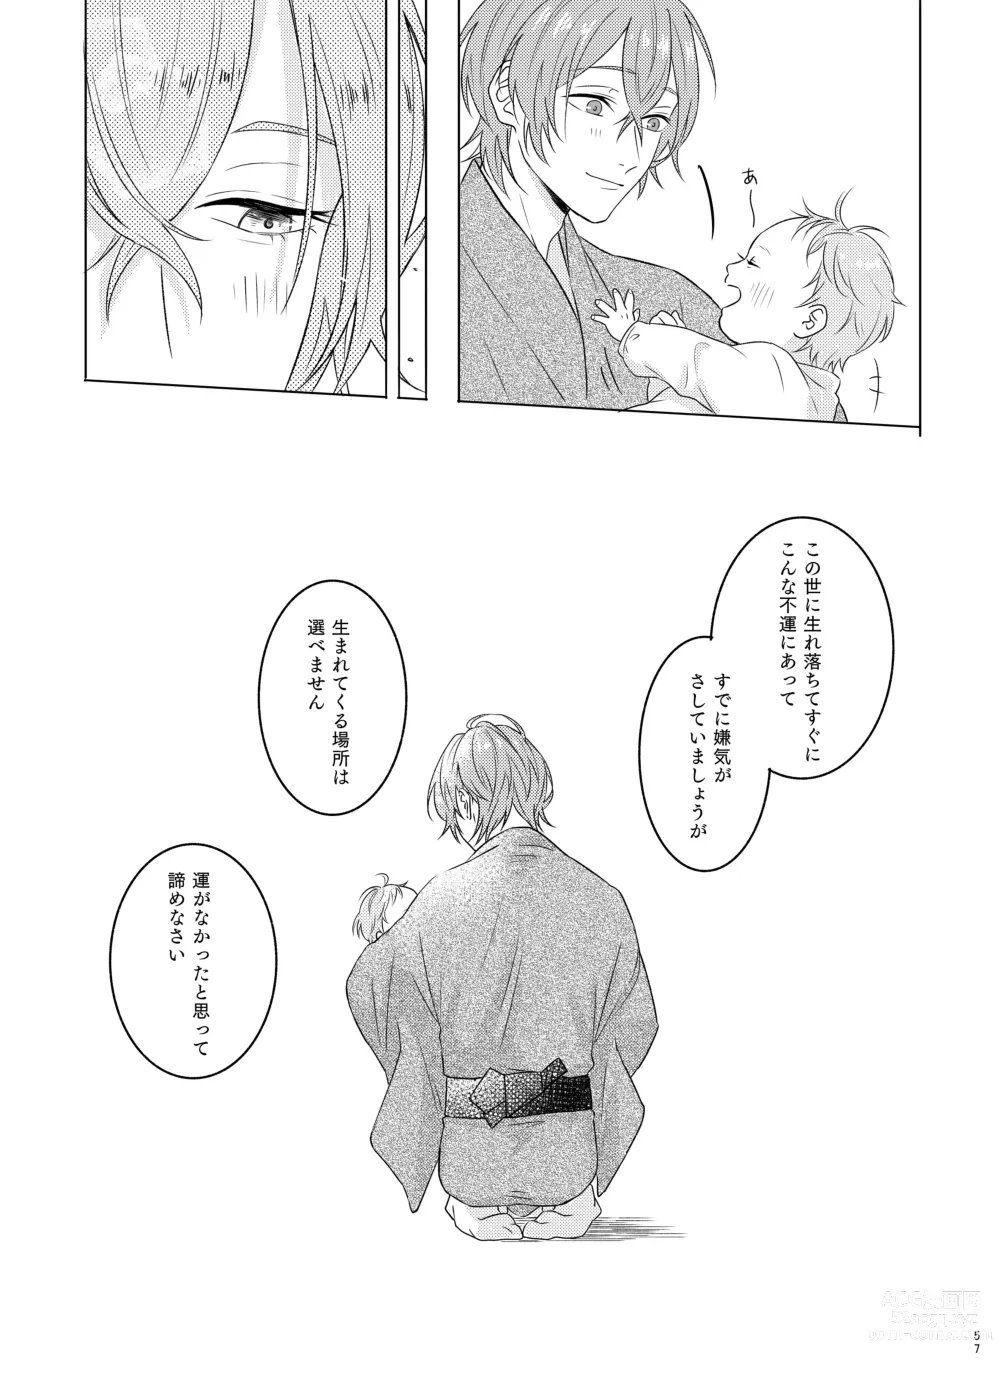 Page 57 of doujinshi Kami sama no ko